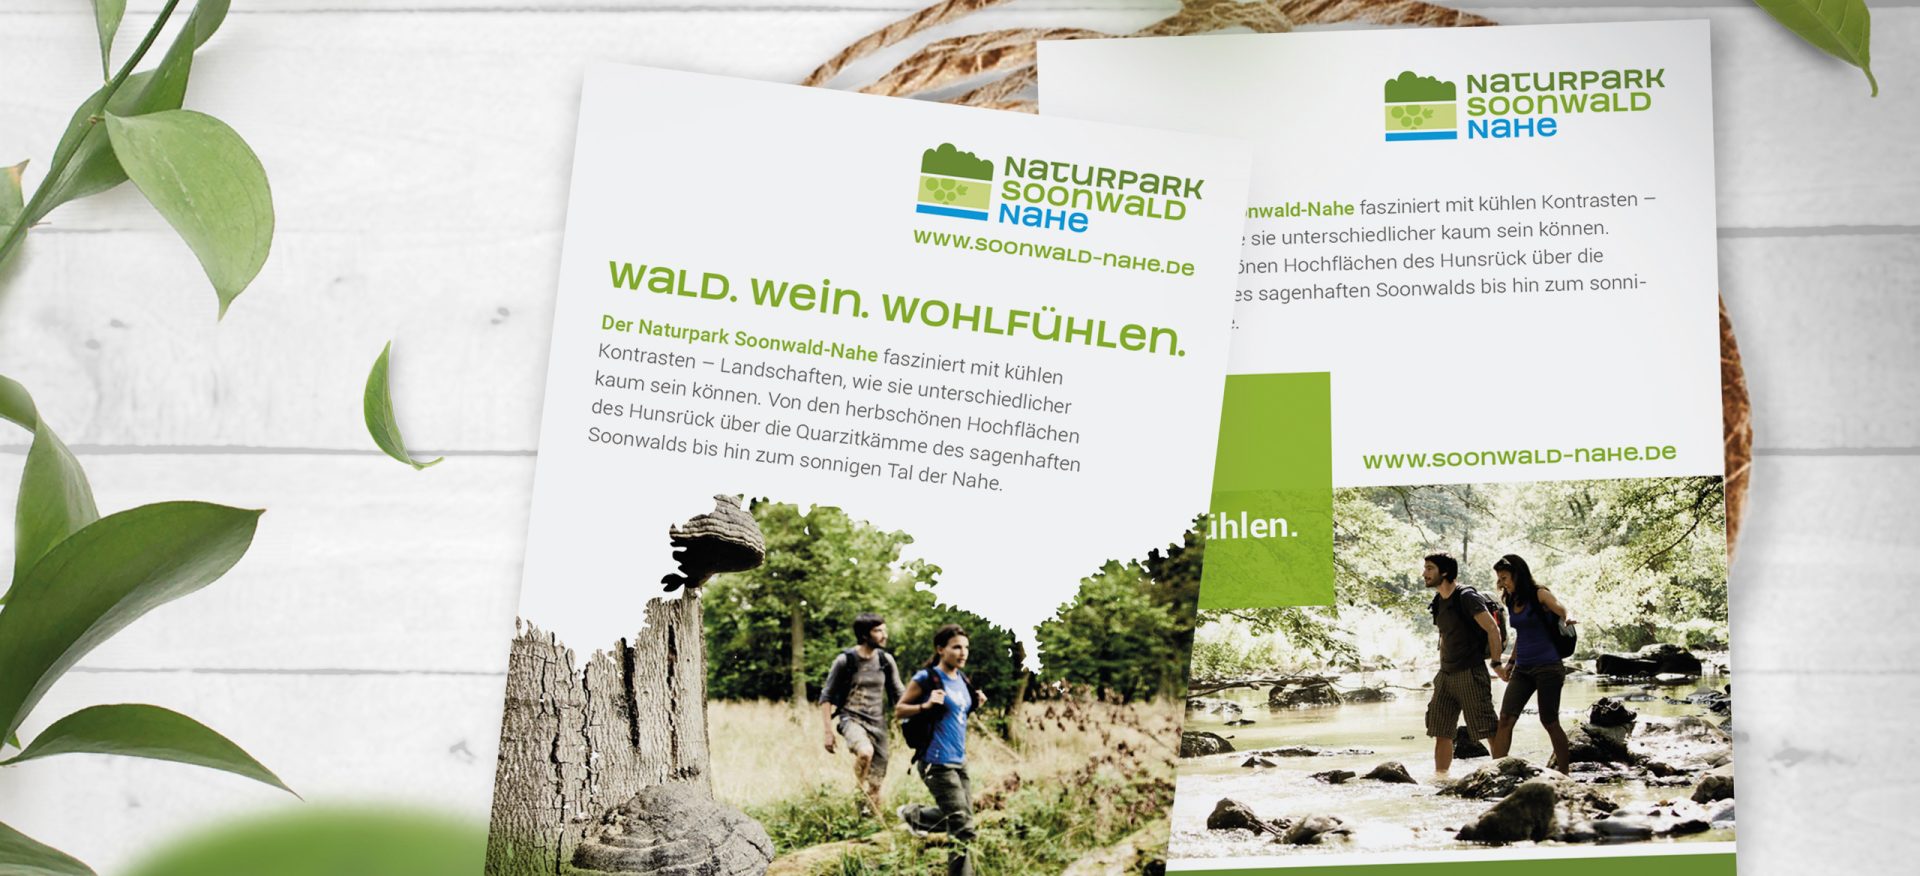 Verschiedene Flyer von Naturpark Soonwald-Nahe